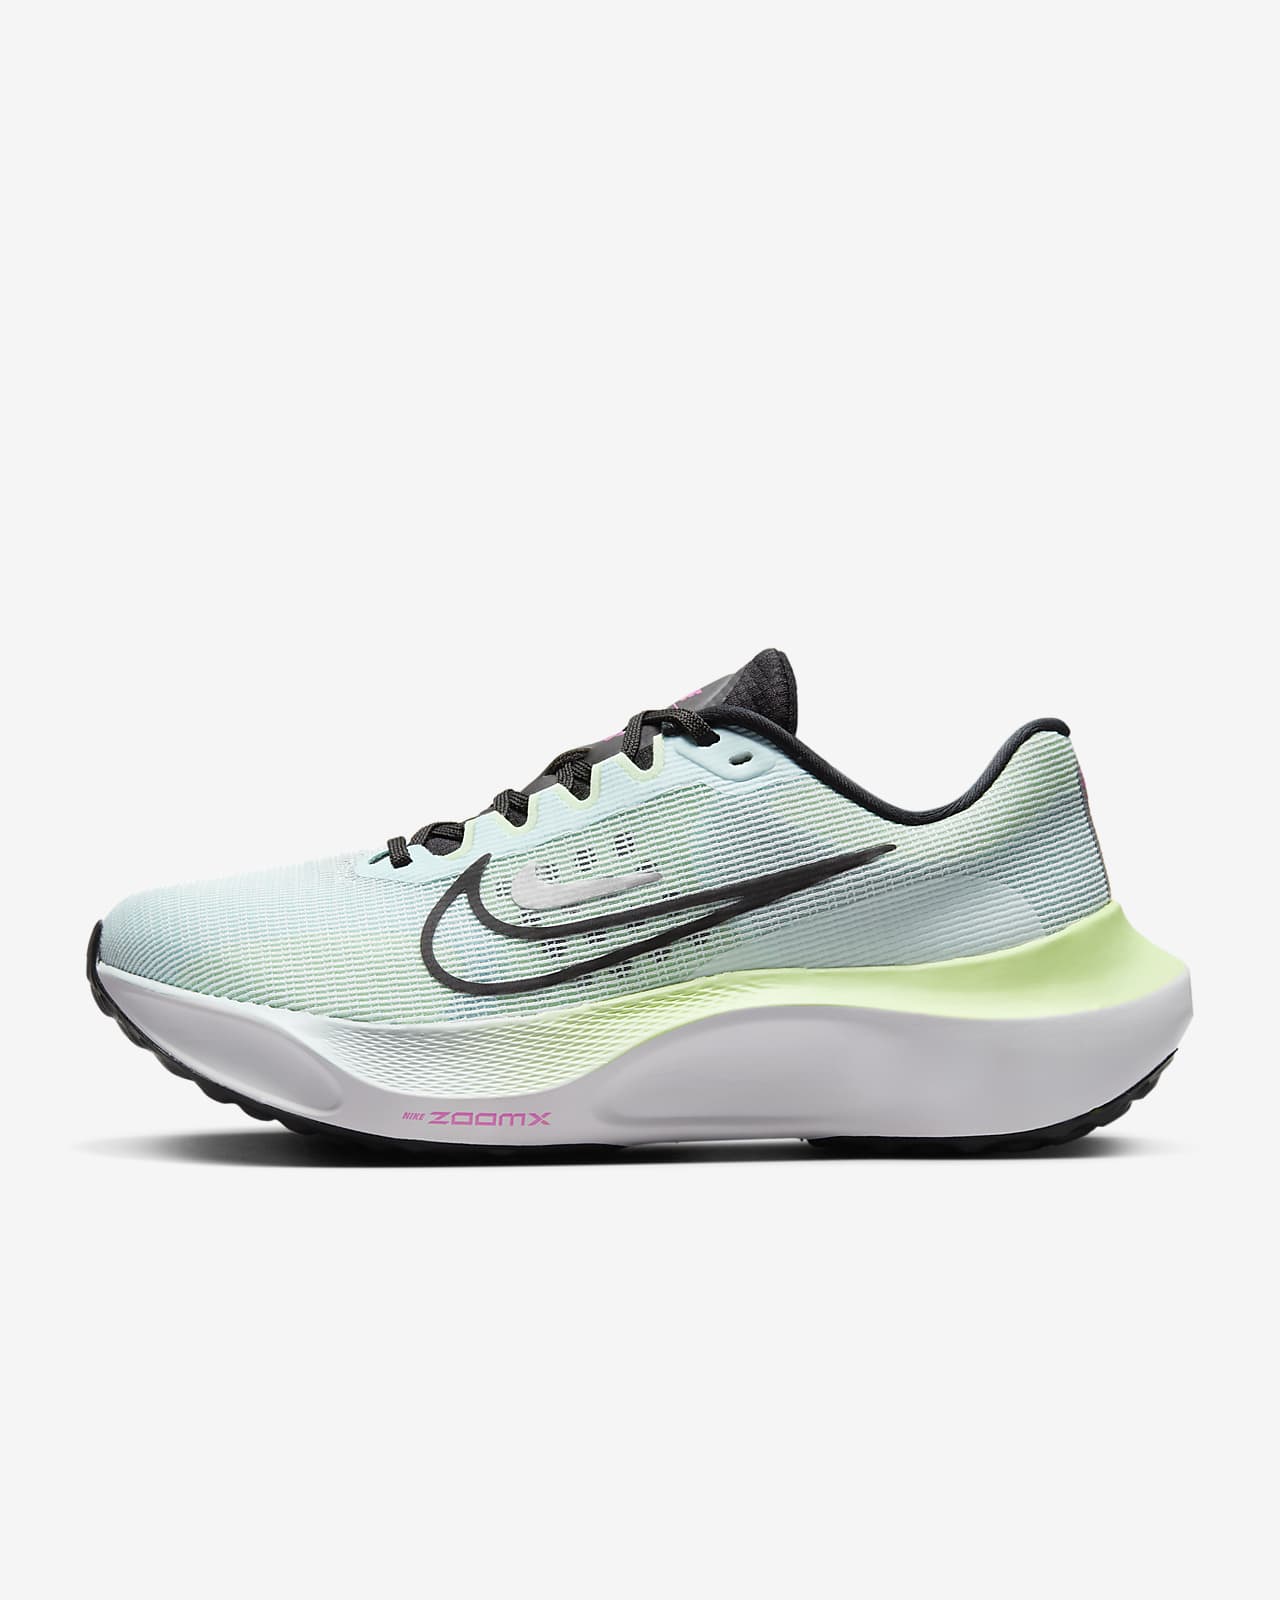 Γυναικεία παπούτσια για τρέξιμο σε δρόμο Nike Zoom Fly 5